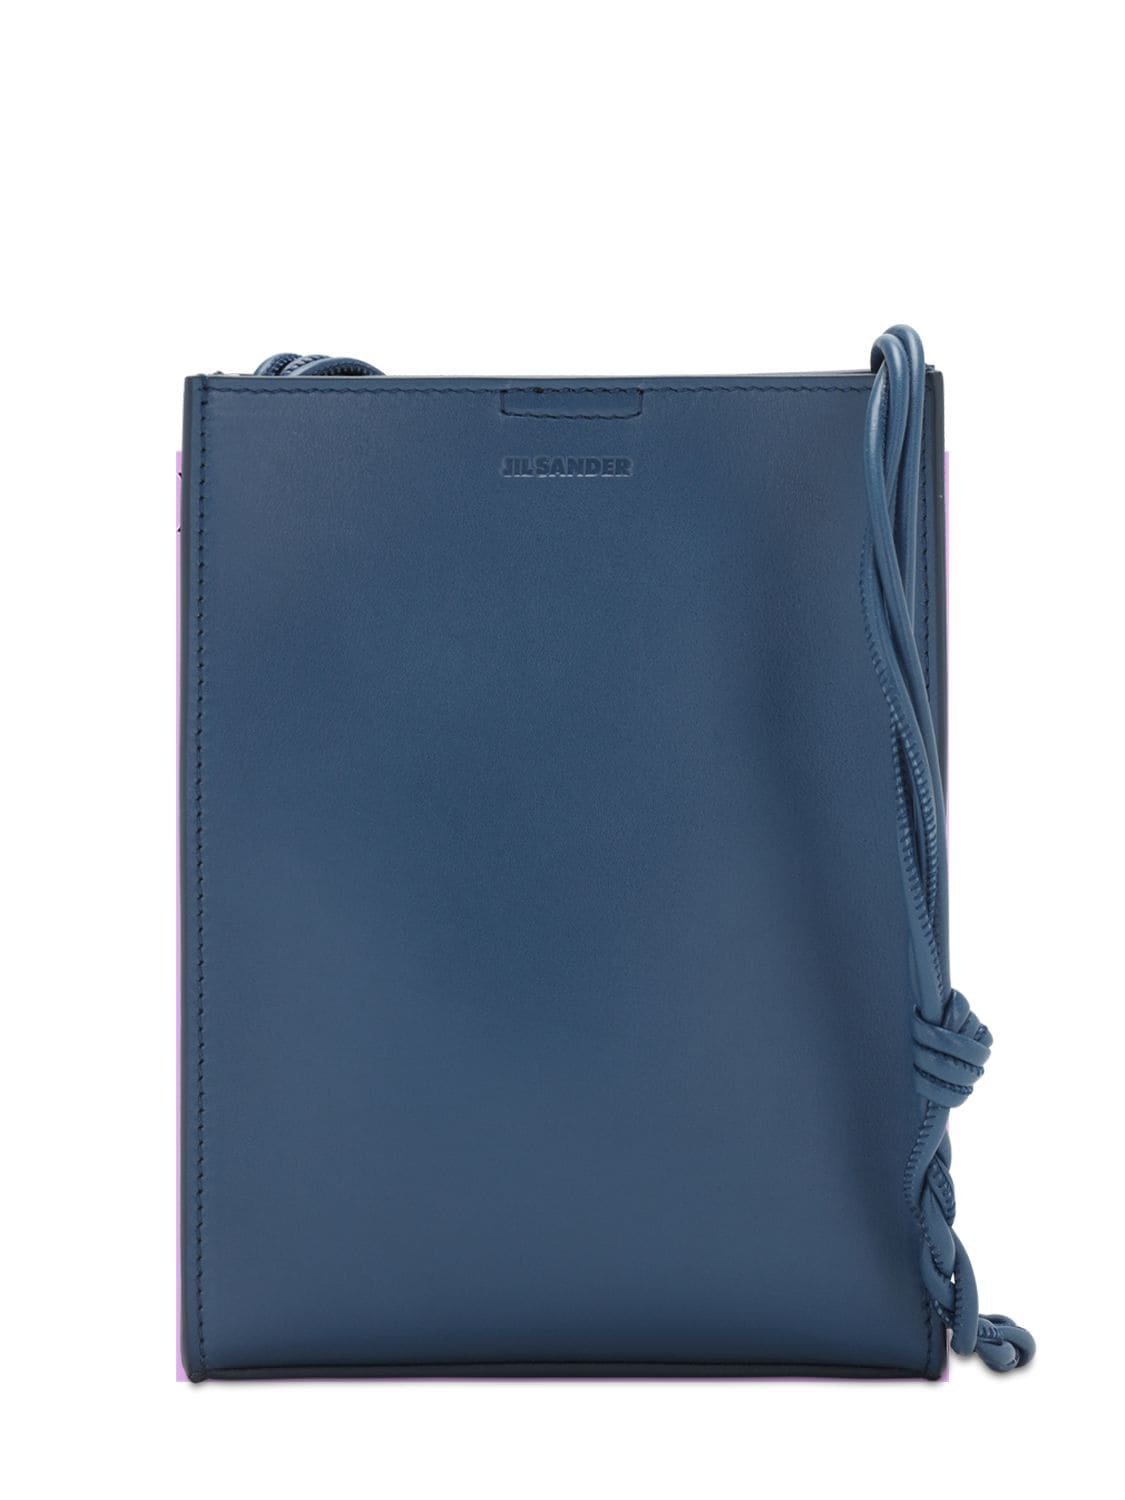 Jil Sander Small Tangle Leather Shoulder Bag In 423 Medblue | ModeSens